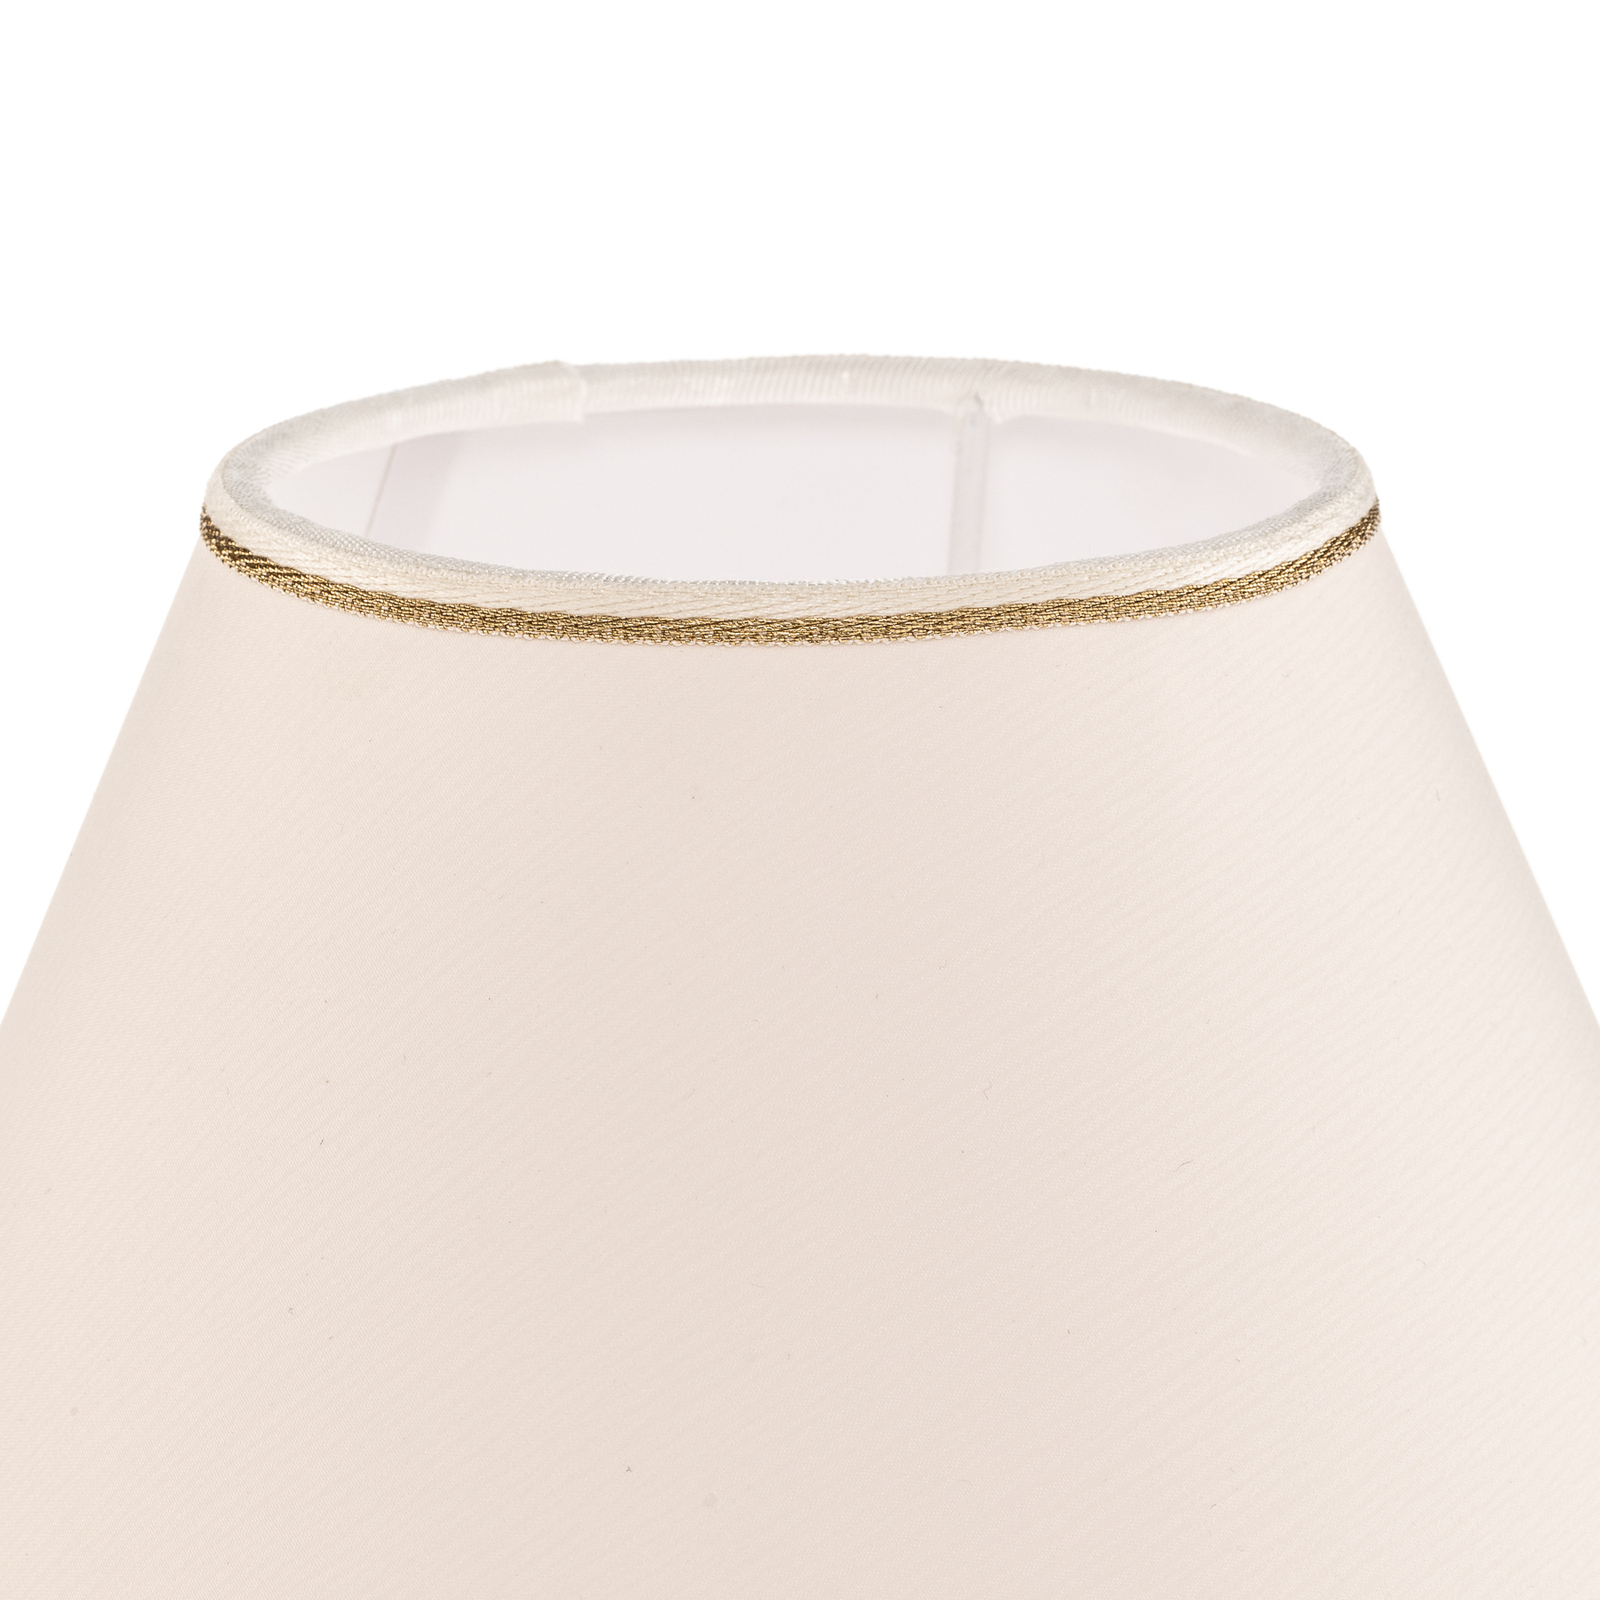 Lampa stołowa Giardino Avorio biało-złota, Ø 25 cm